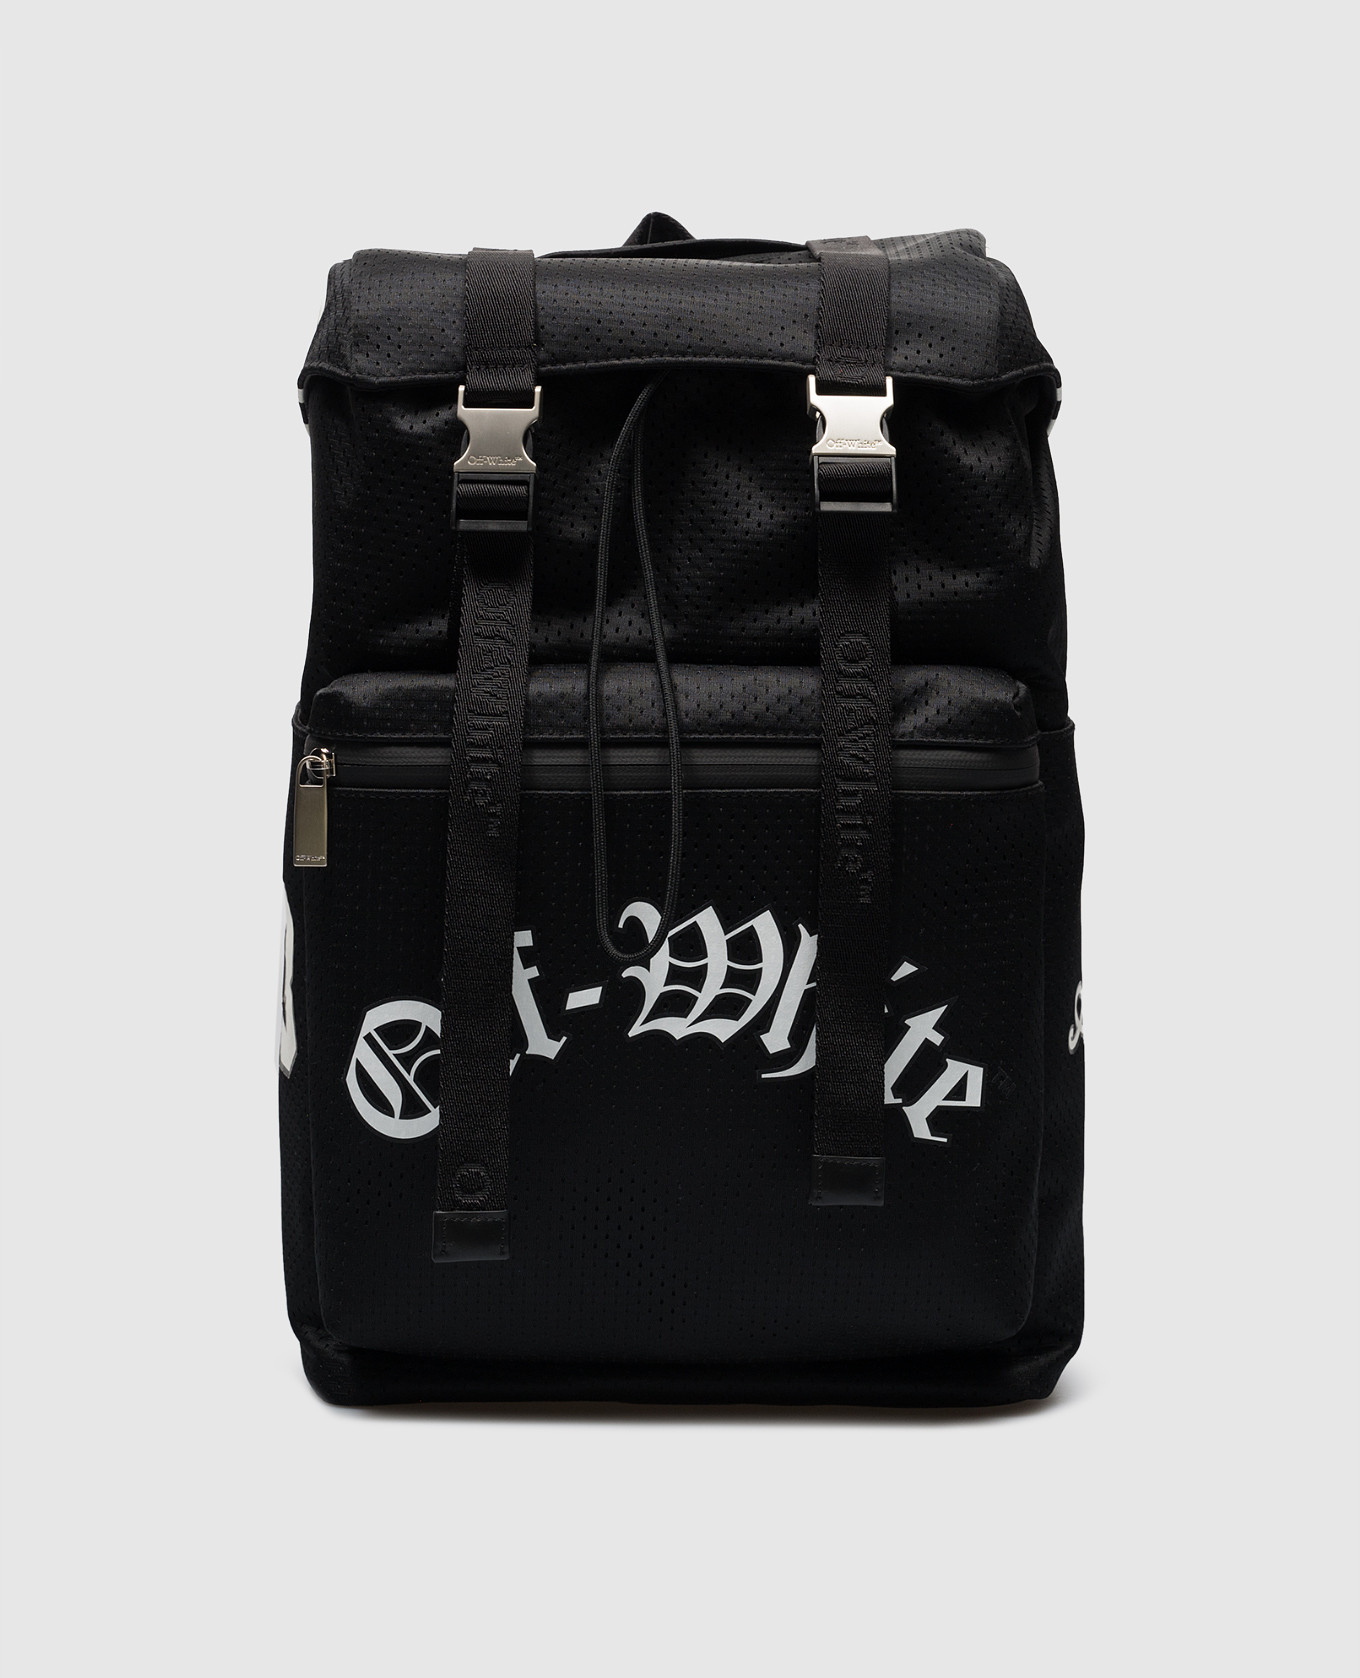 Черный рюкзак с принтом логотипа.